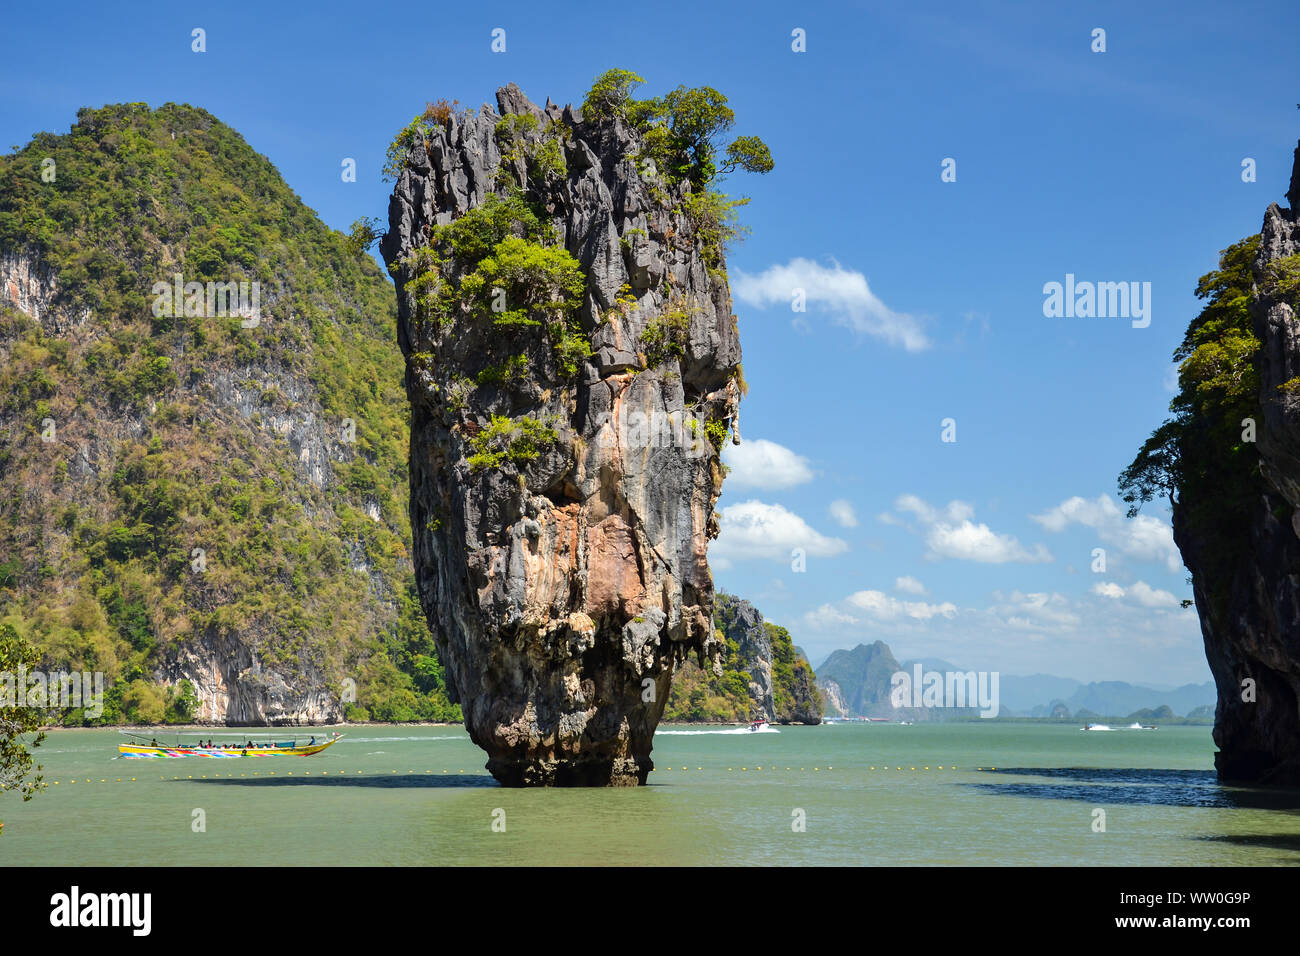 Incredibile naturale di roccia calcarea soprannominato "l'Isola di James Bond' ('Ko Ta Pu' in tailandese) situato nella Baia di Phang Nga, Thailandia. Foto Stock